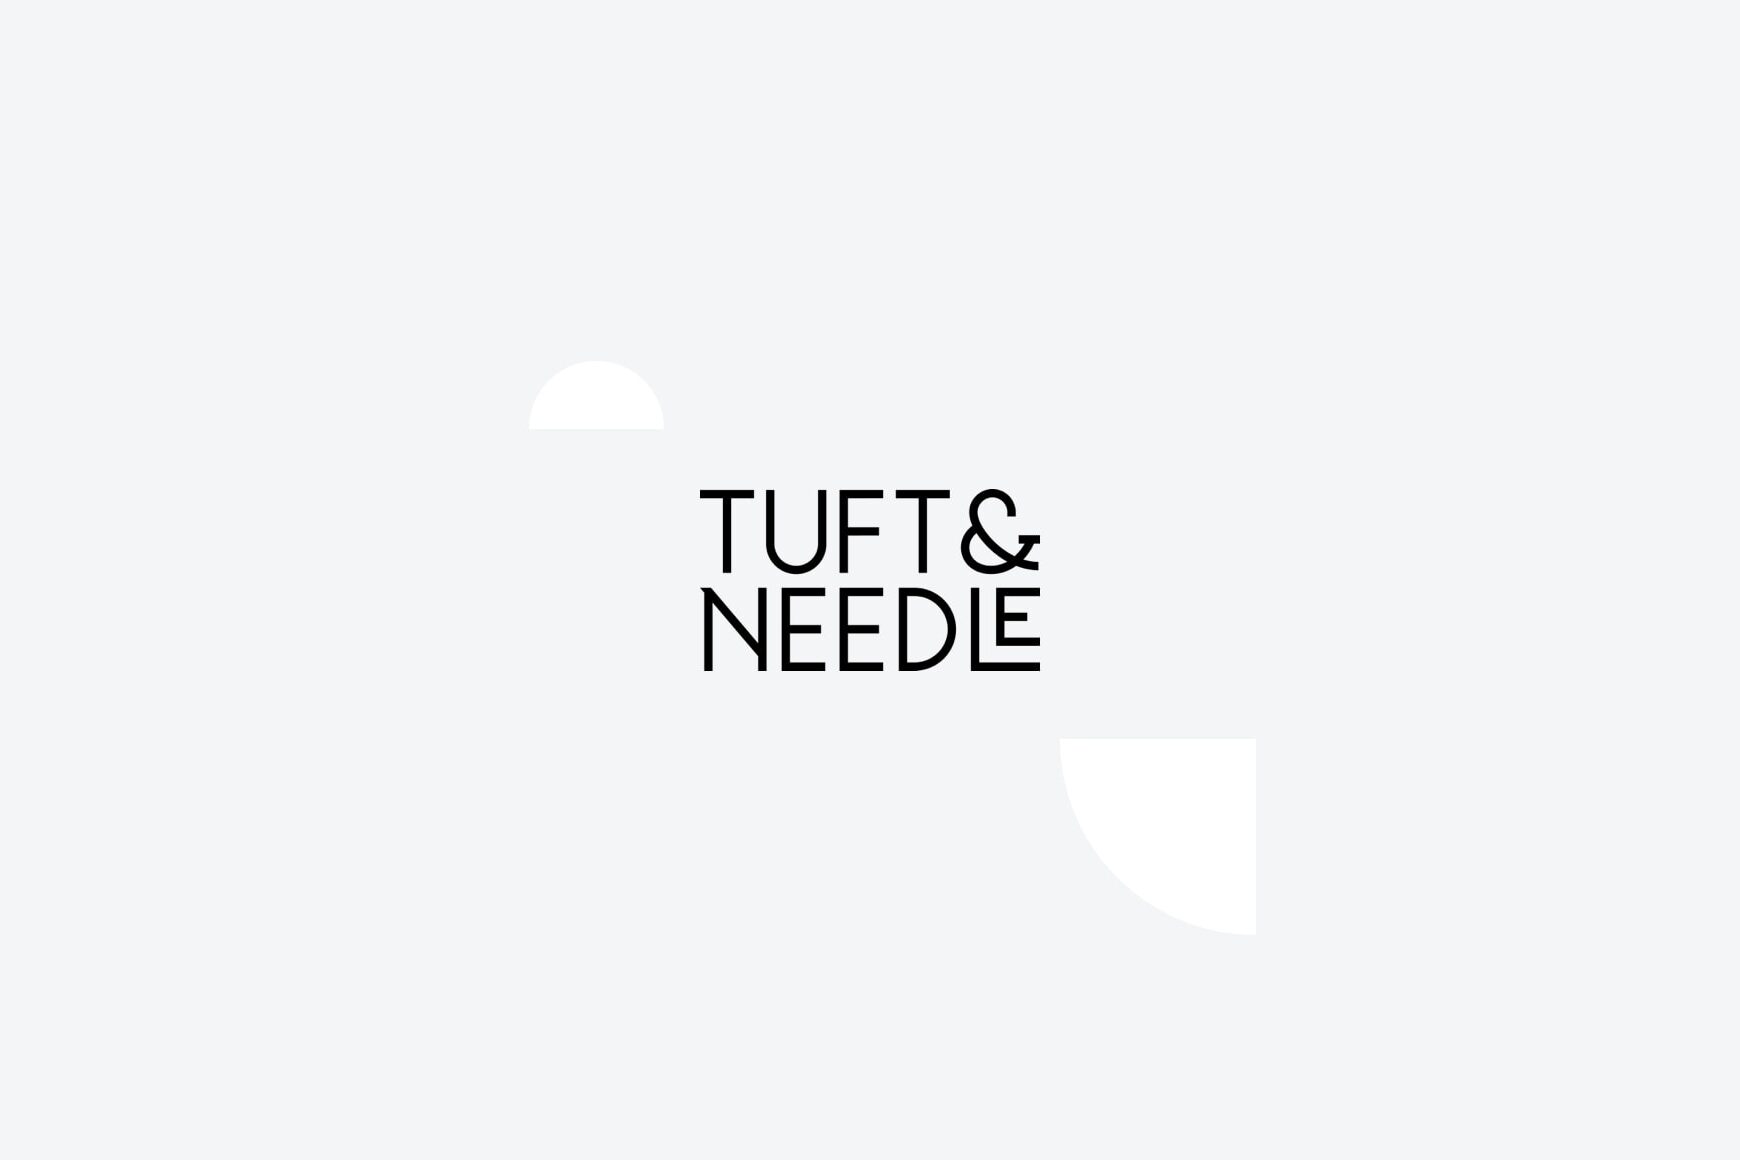 Tuft & Needle Logo Hm Awards